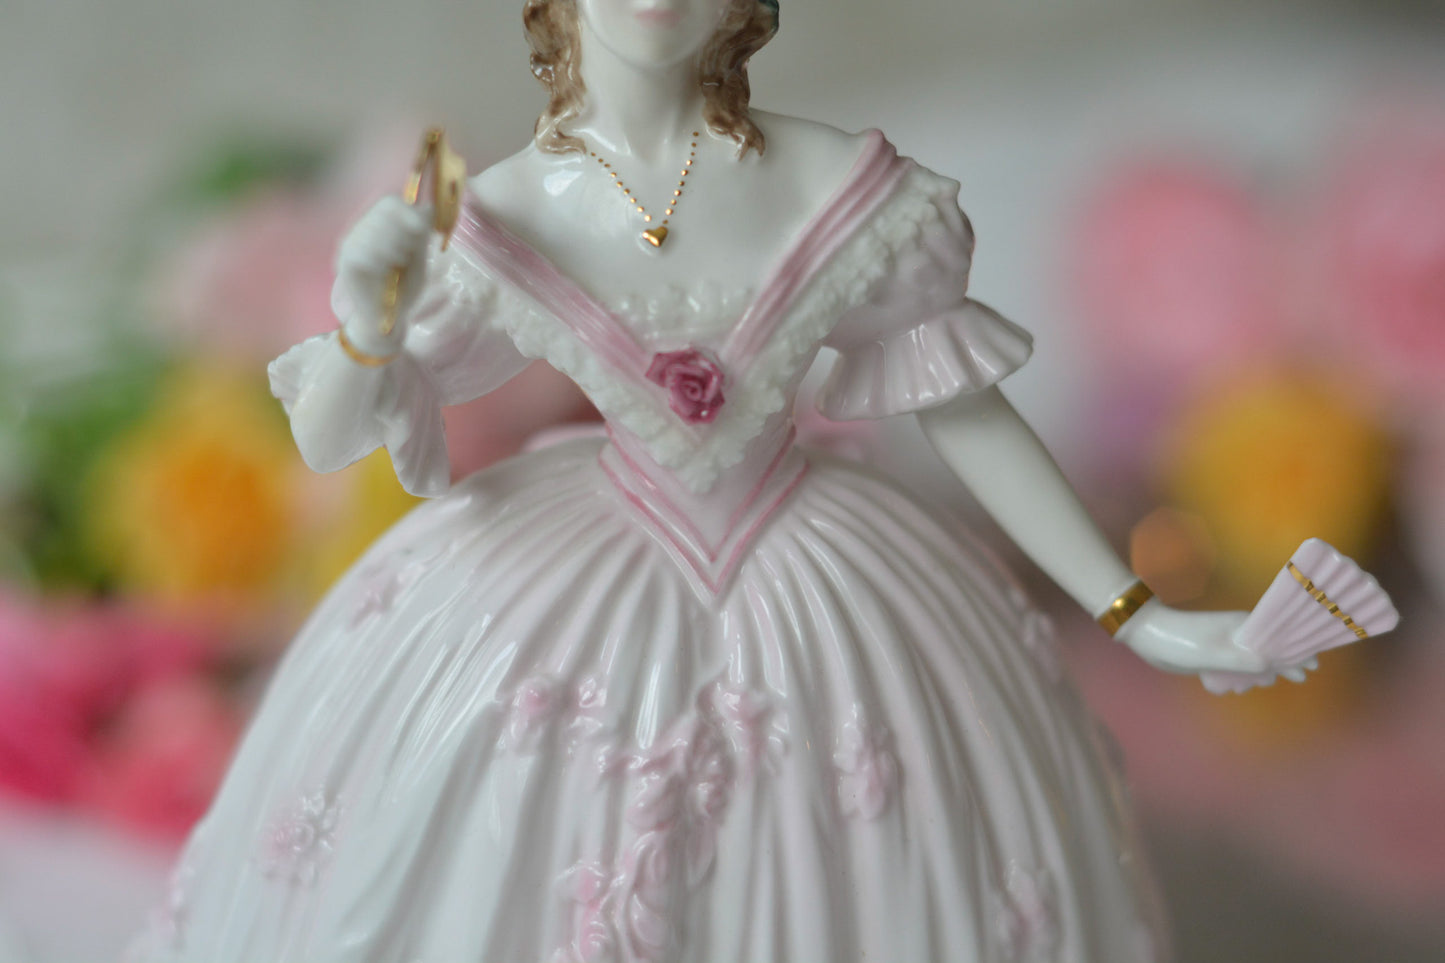 英国、ロイヤルウースターのフィギュリン。フィギュリンは陶器でできたお人形で、ポーセリンドールとも呼ばれています。華やかで美しいフィギュリンです。